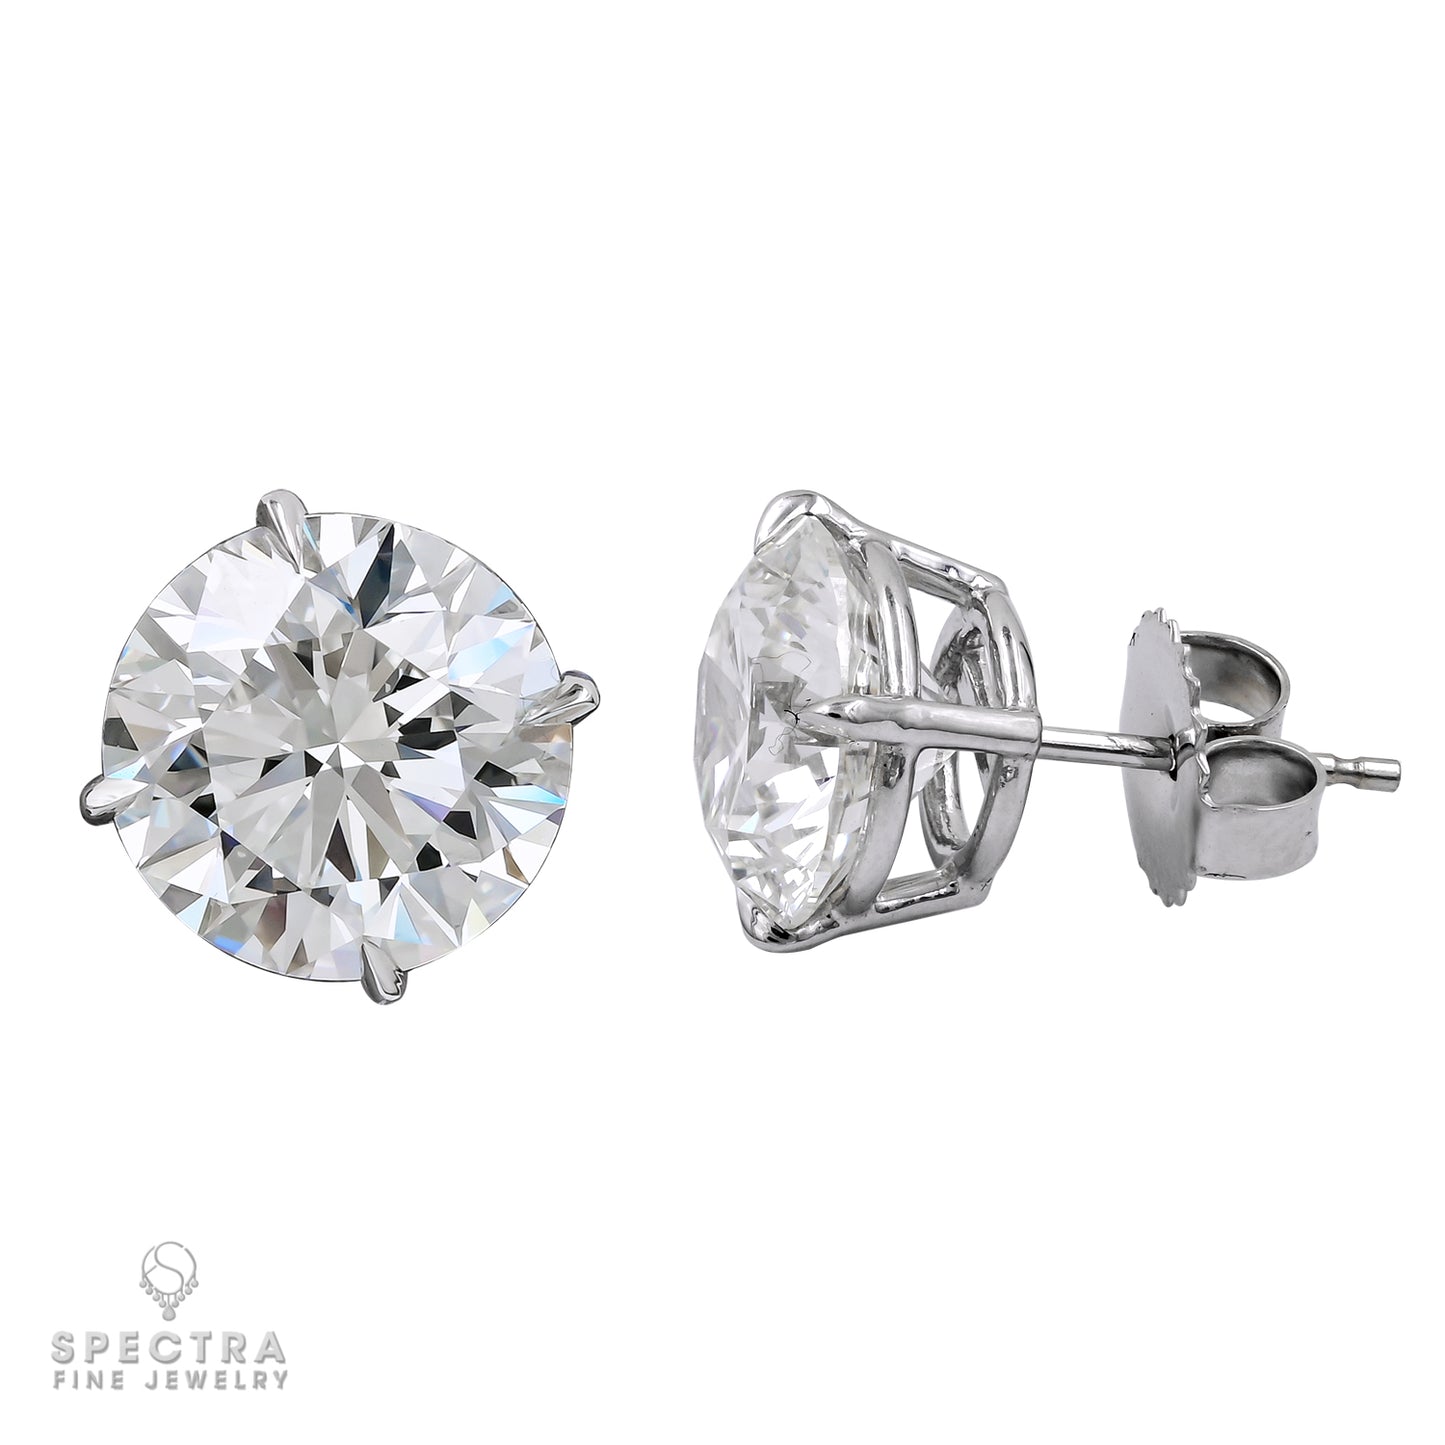 Spectra Fine Jewelry 0.70ct & 0.71ct GIA Certified Diamond Stud Earrings